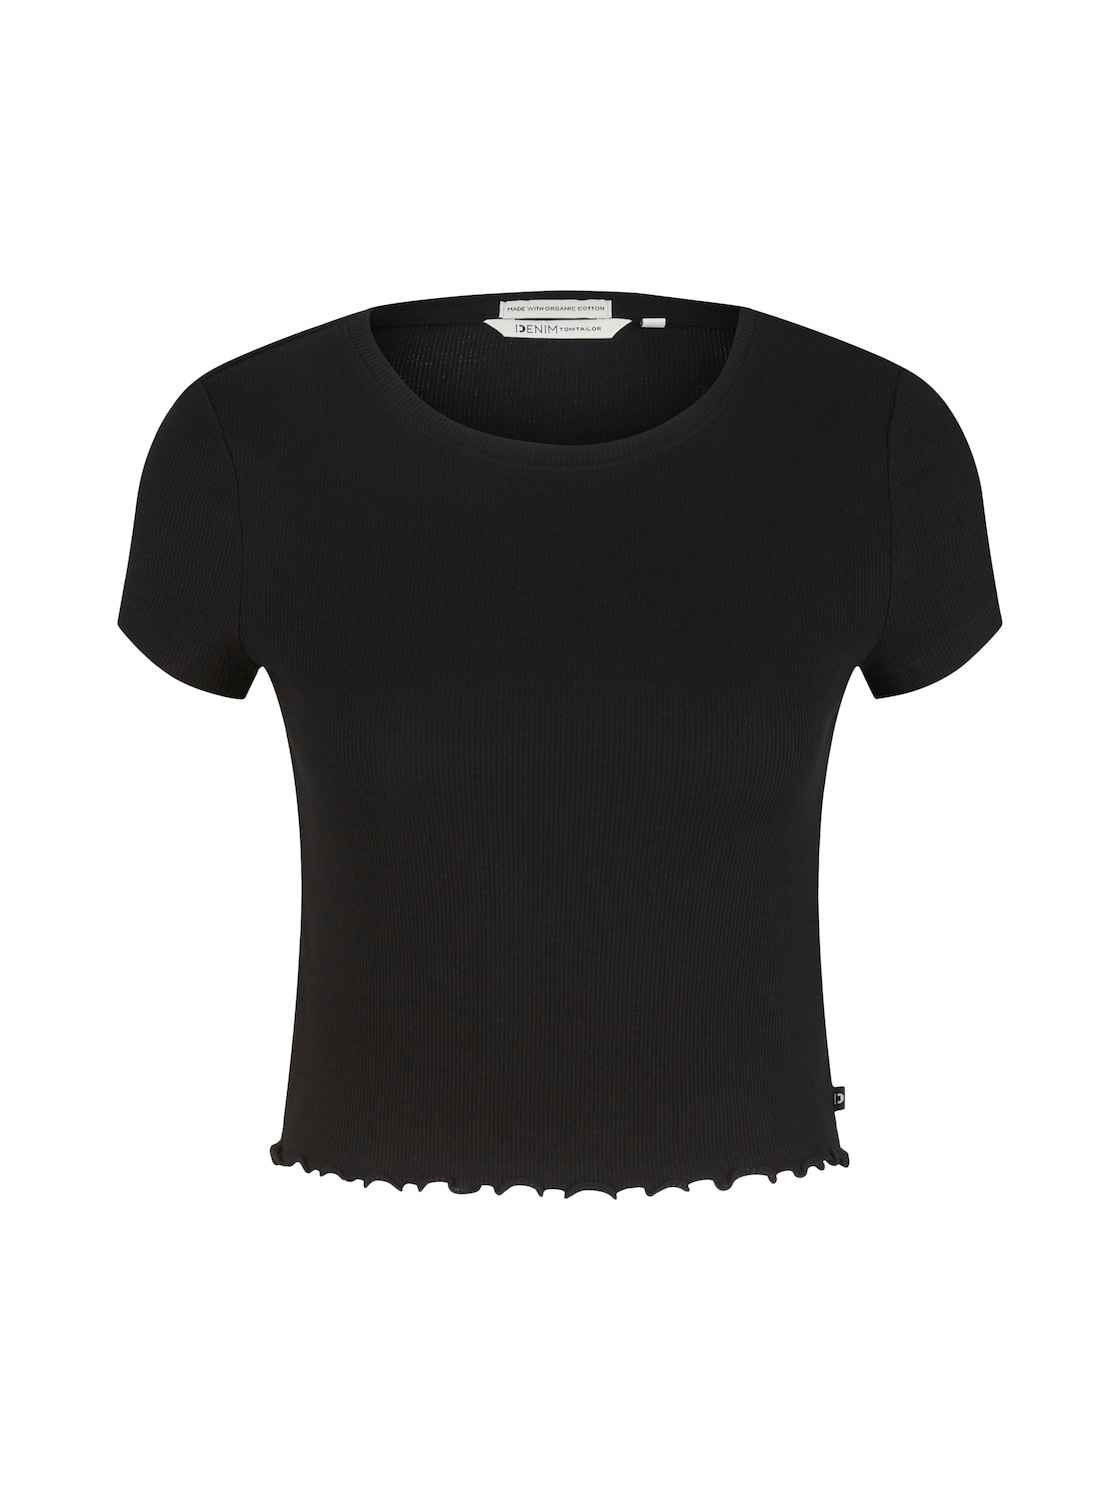 TOM TAILOR DENIM Damen Cropped T-Shirt, schwarz, Uni, Gr. XXL von Tom Tailor Denim